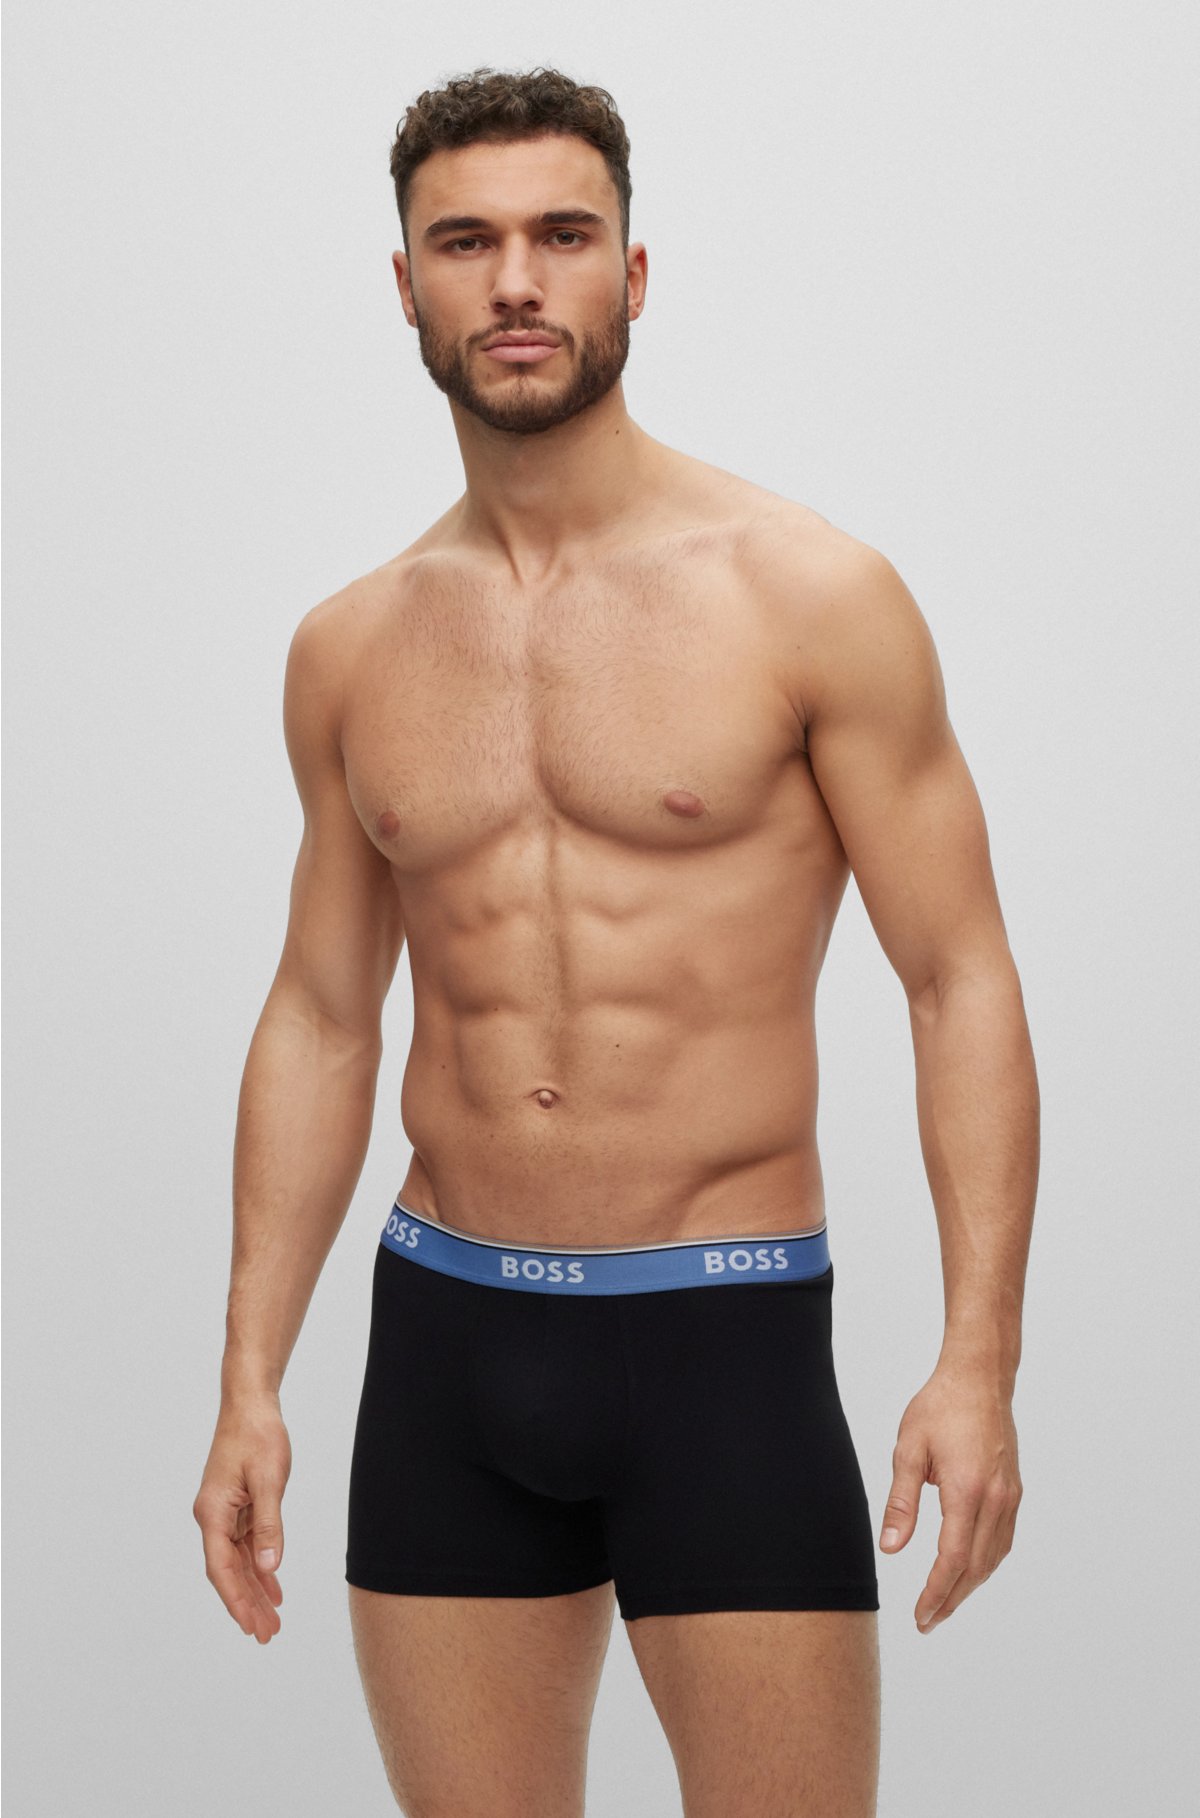 Buy Go Smart Underwear for Men, Men's Premium Comfortable Cotton Underwear  for Men